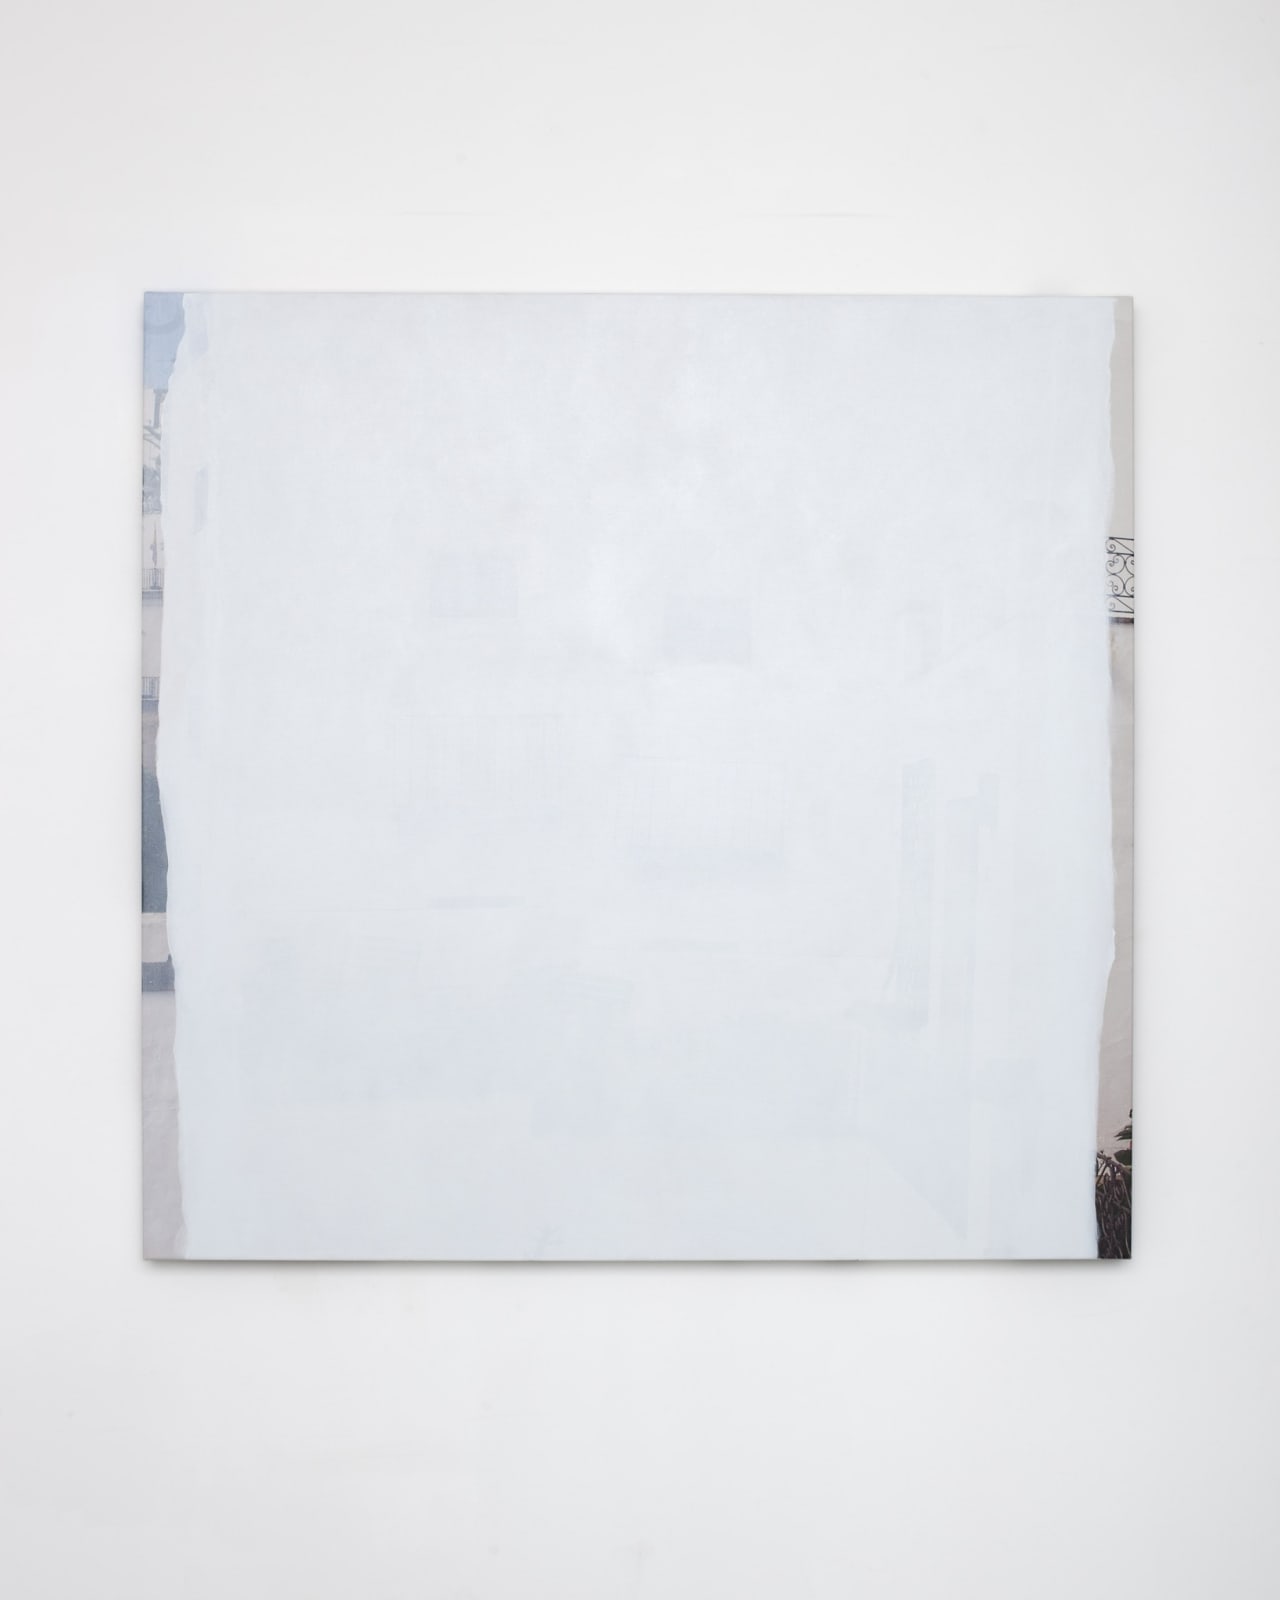 Ger van Elk, Conclusions II - Vejer de la Frontera “Blue transparent”, 2012